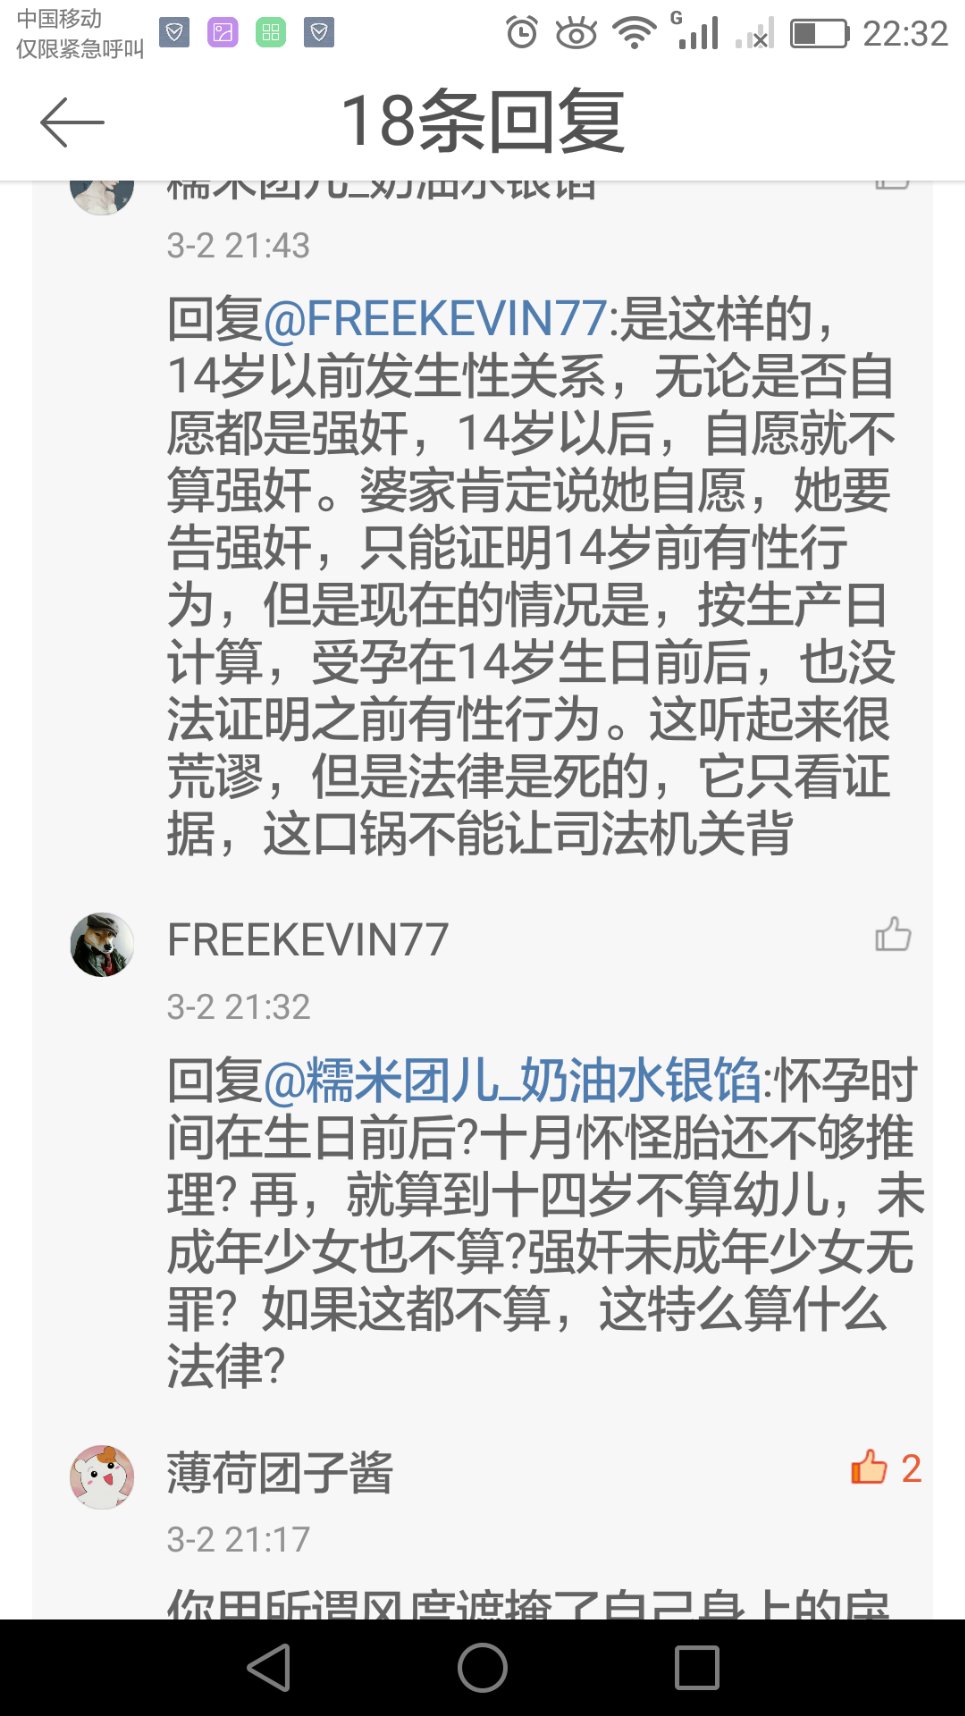 为什么会有香港人台湾人不承认自己是中国人?